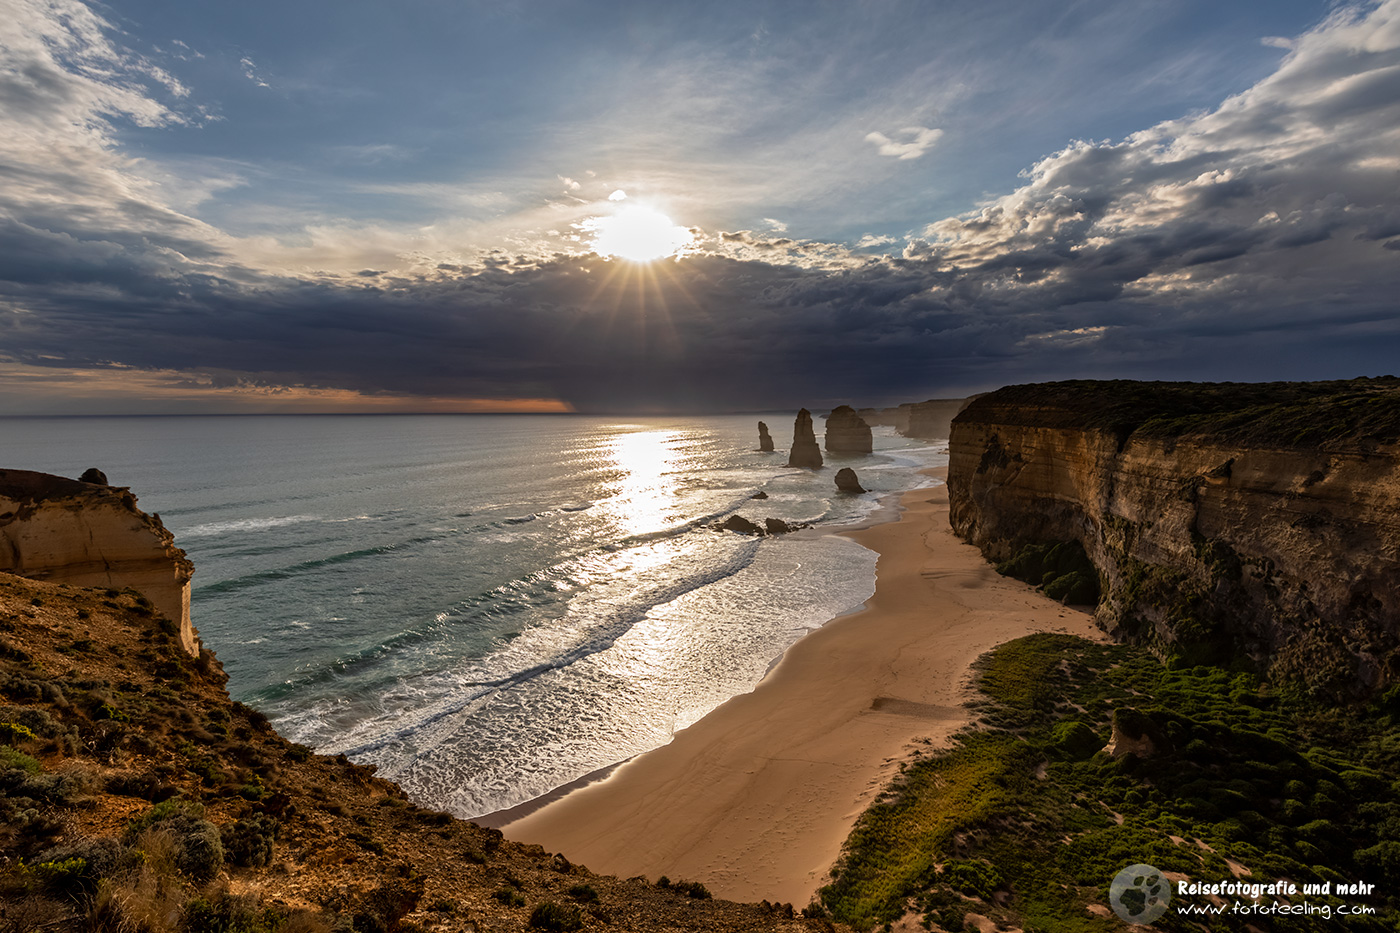 Die Sonne versinkt in einer Wolkenfront, Zwölf Apostel (Twelve Apostles), Great Ocean Road, Victoria, Australien